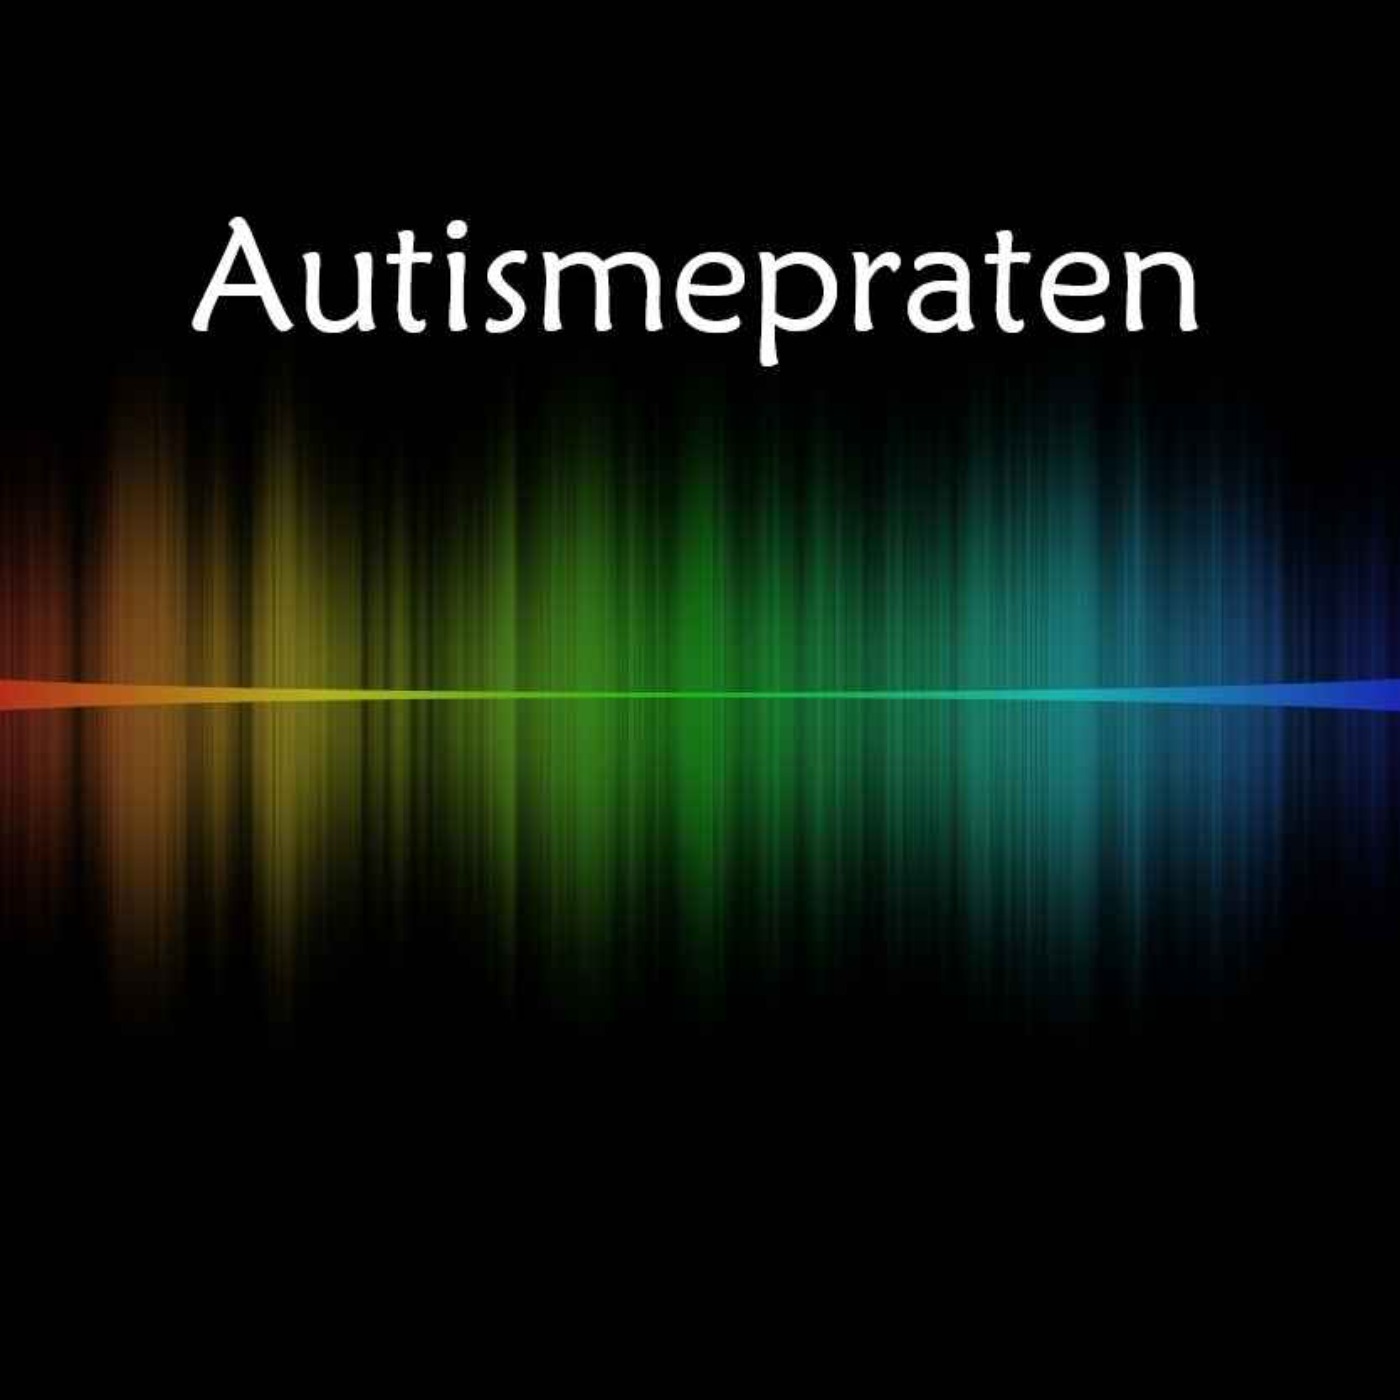 Autismepraten episode 4 - Autisme og Kommunikasjon